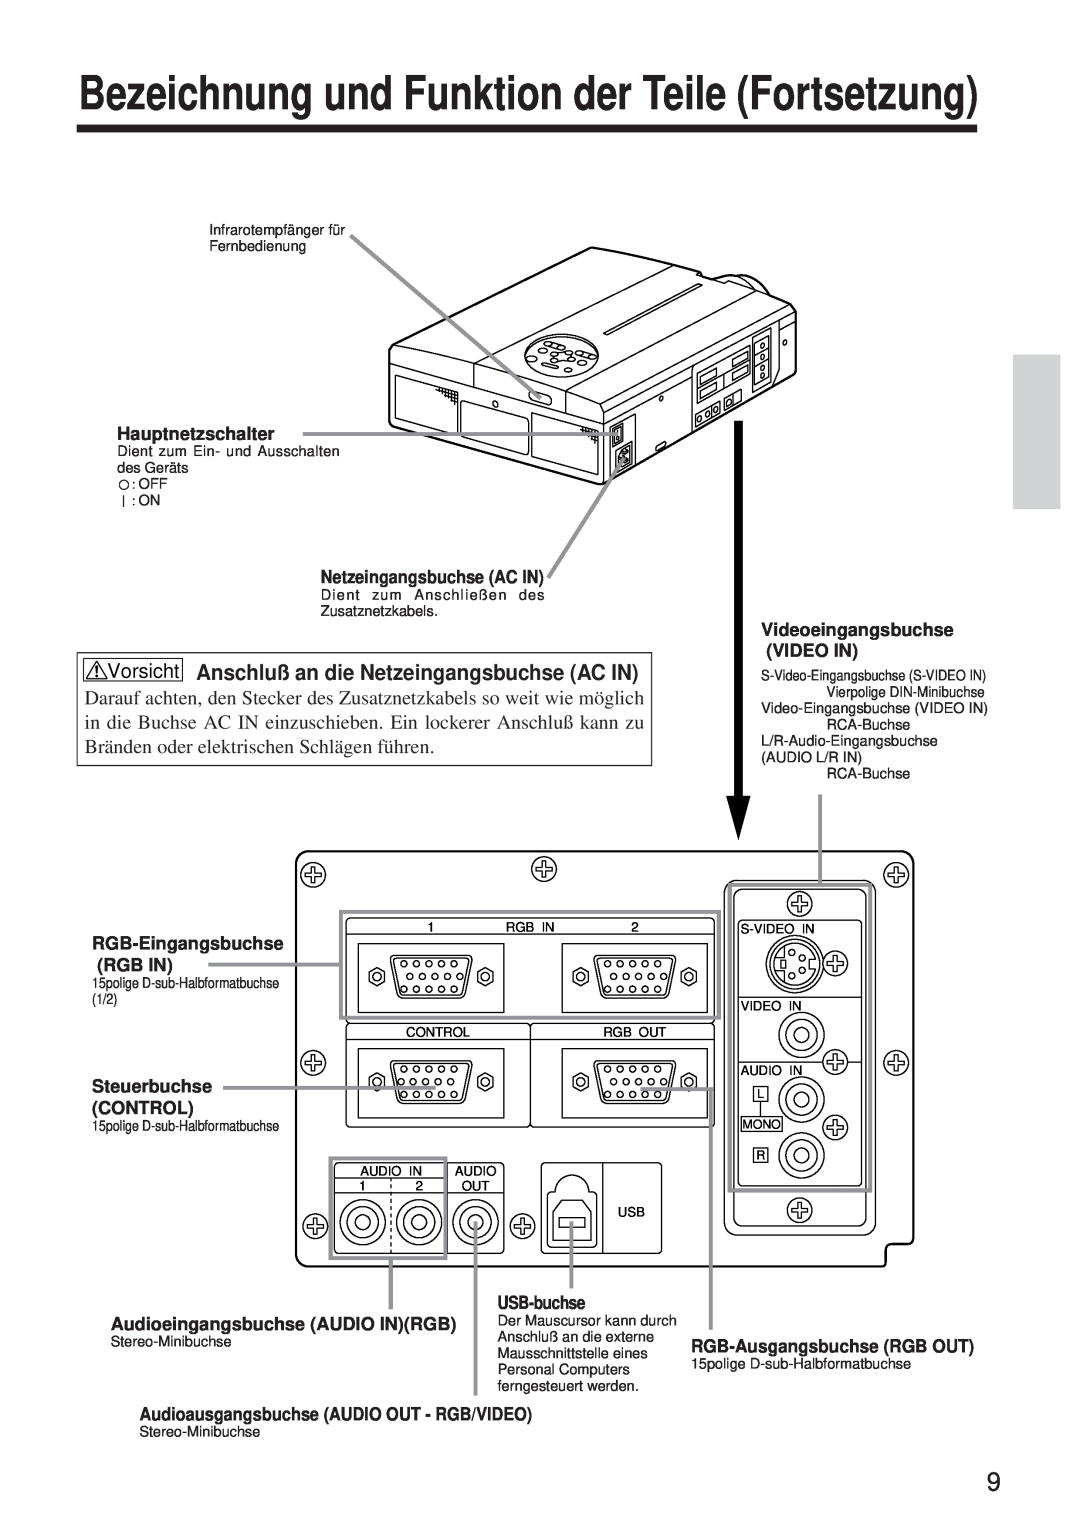 BOXLIGHT MP-650i Bezeichnung und Funktion der Teile Fortsetzung, Vorsicht Anschluß an die Netzeingangsbuchse AC IN 